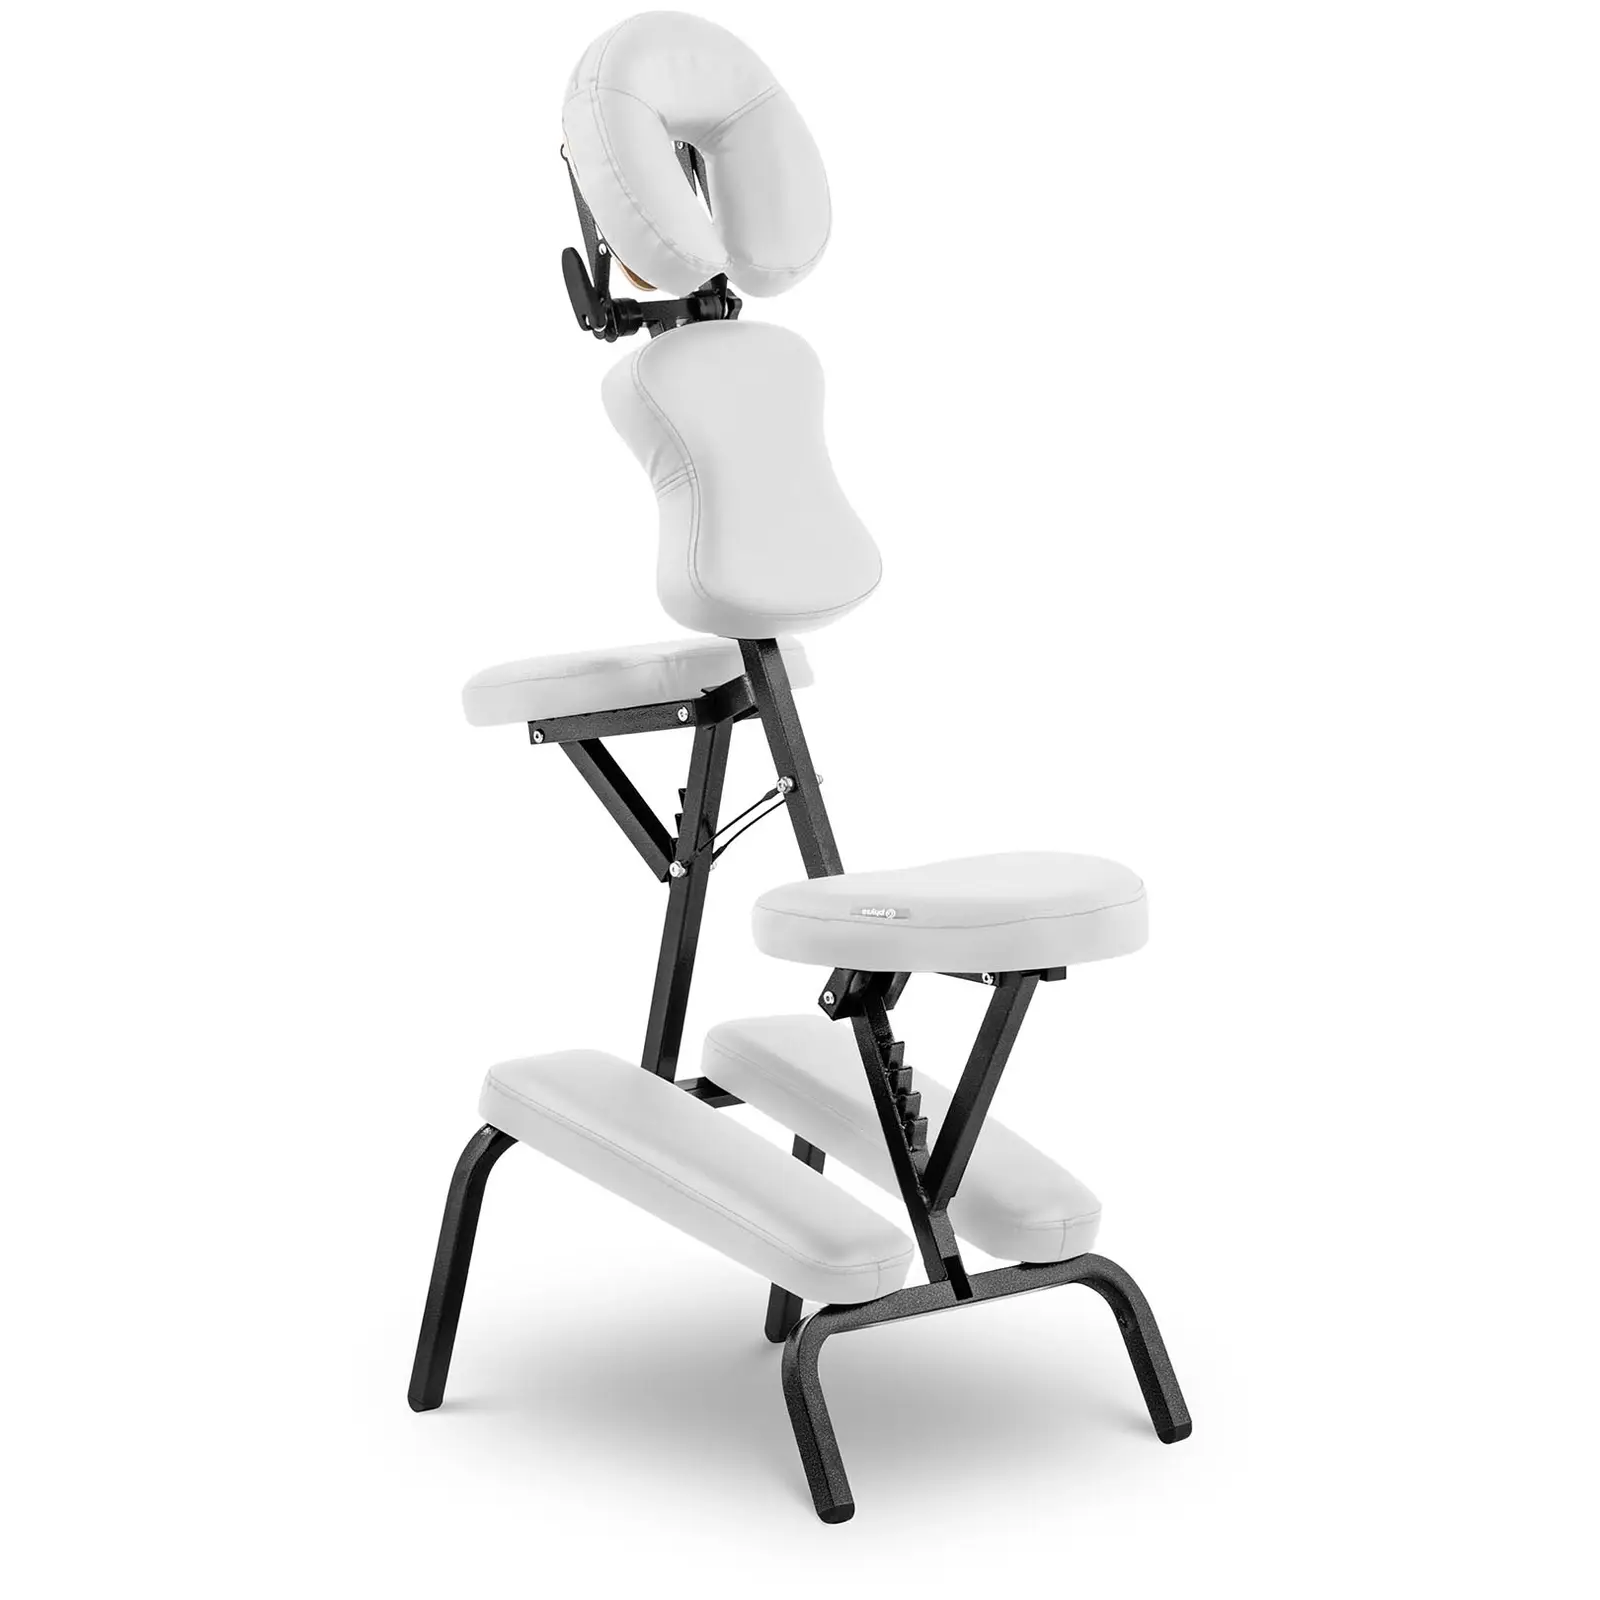 Zdjęcia - Stół do masażu Krzesło do masażu - składane - 26 x 46 x 104 cm - 130 kg - białe